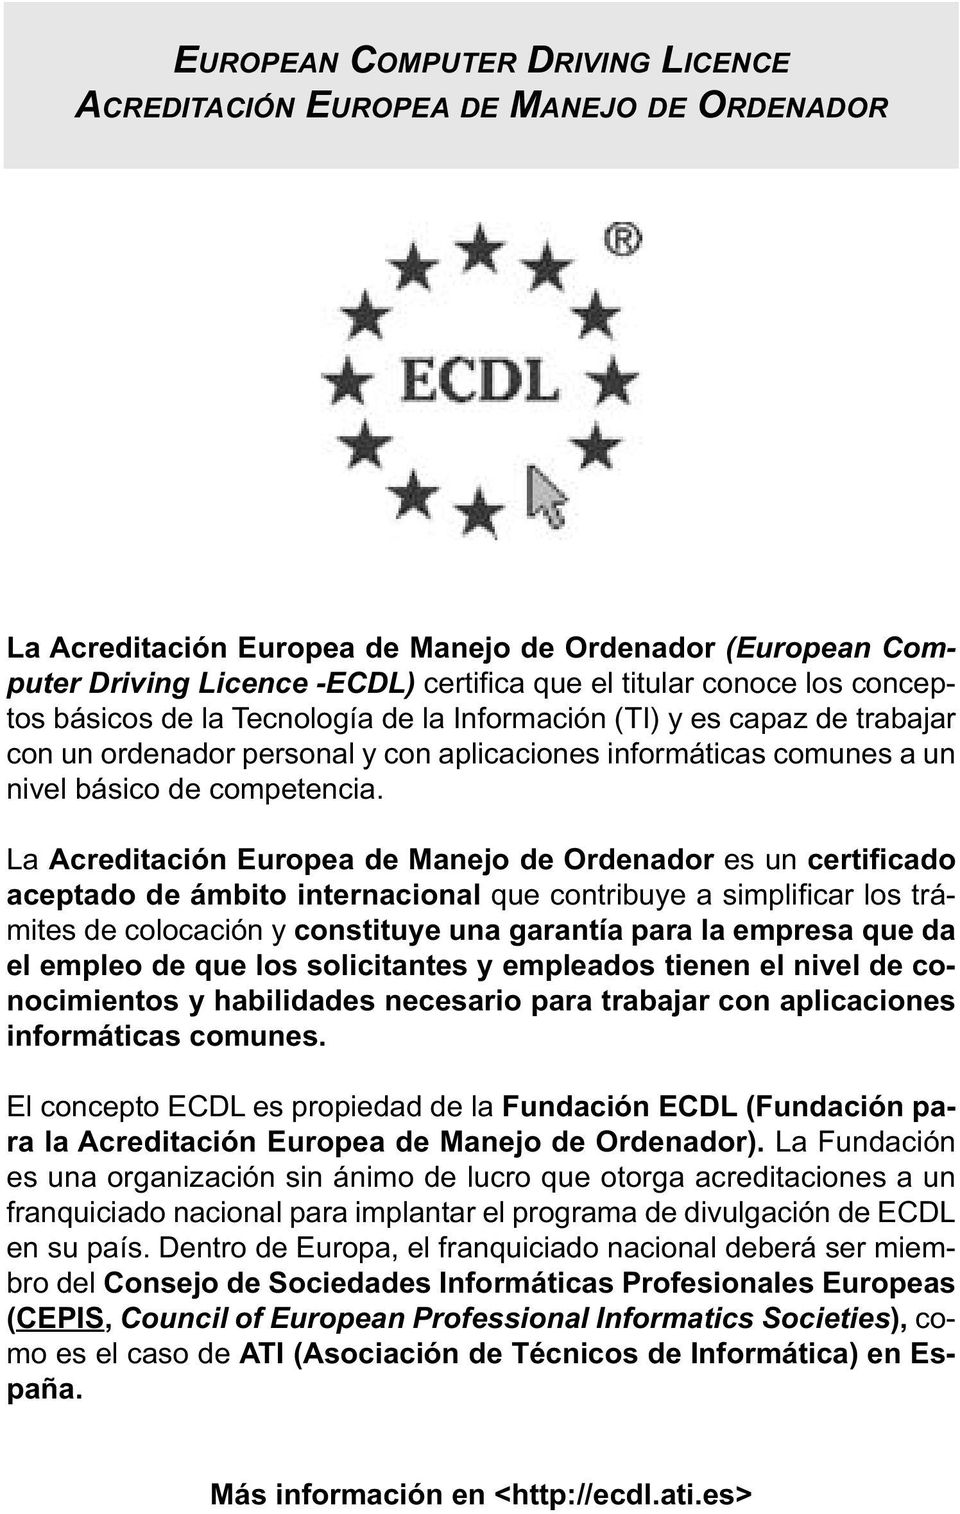 La Acreditación Europea de Manejo de Ordenador es un certificado aceptado de ámbito internacional que contribuye a simplificar los trámites de colocación y constituye una garantía para la empresa que